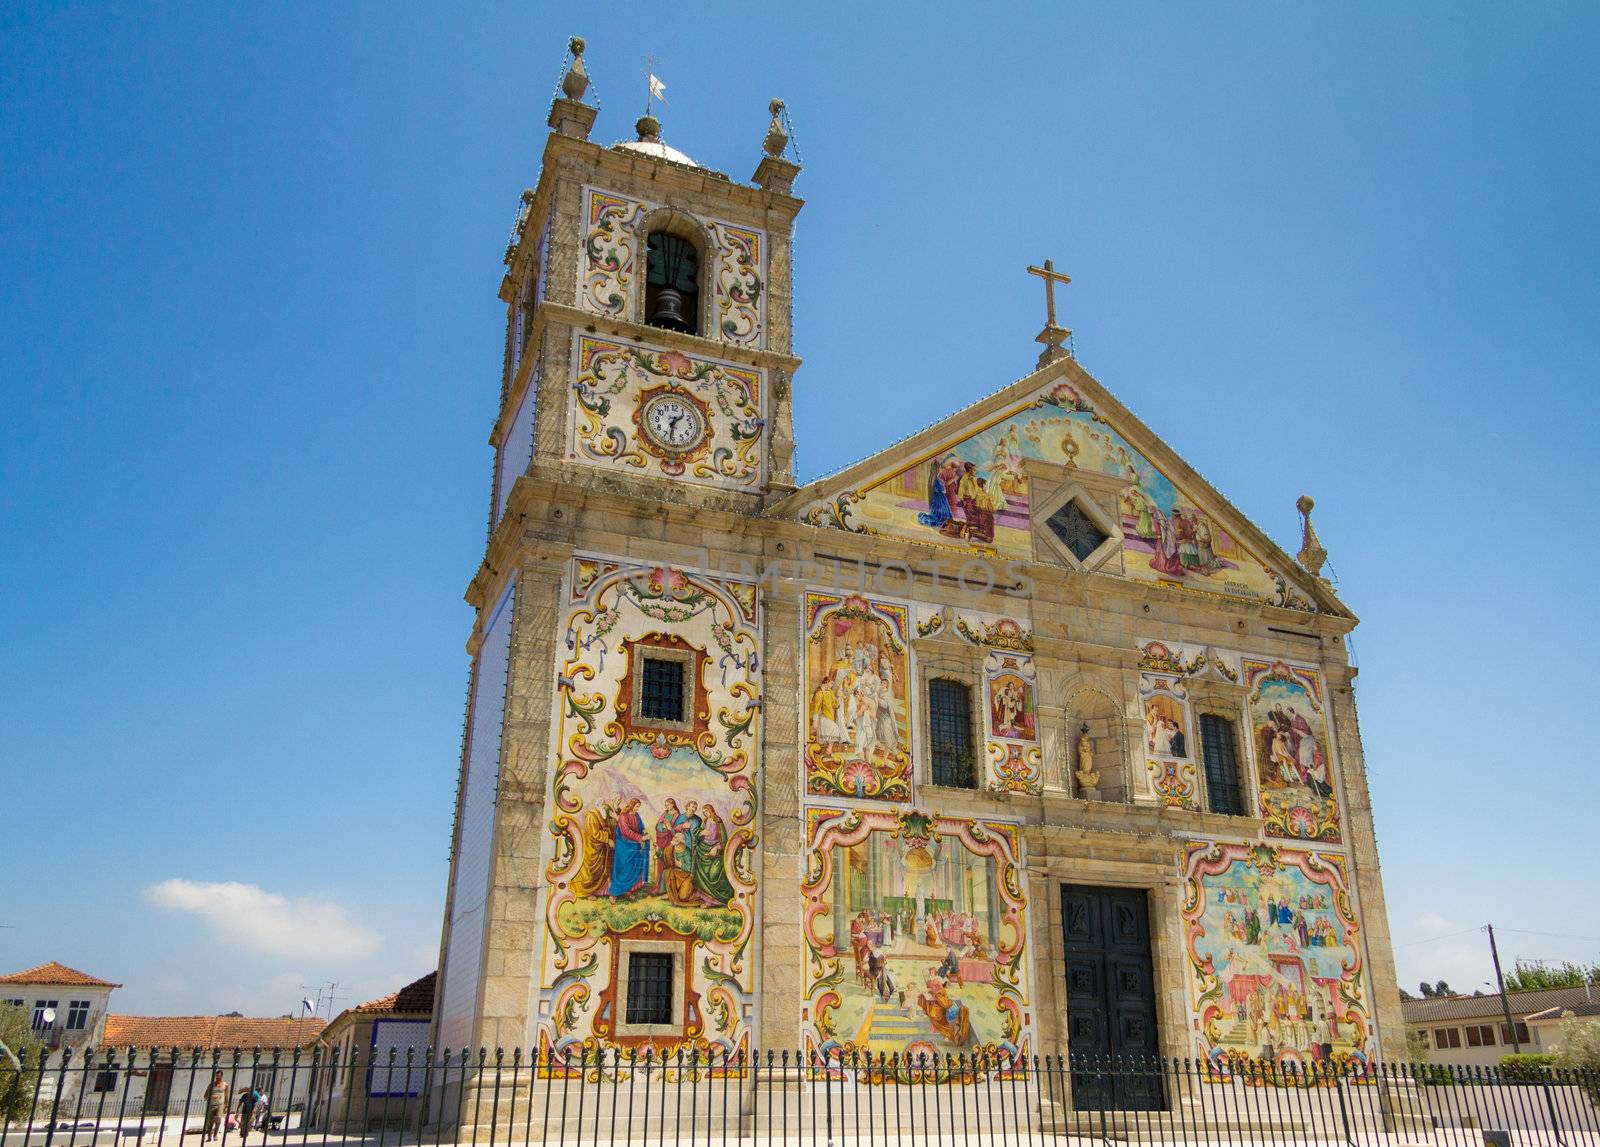 Precious church Matriz de Válega, located in Ovar, municipality of Aveiro, Portugal